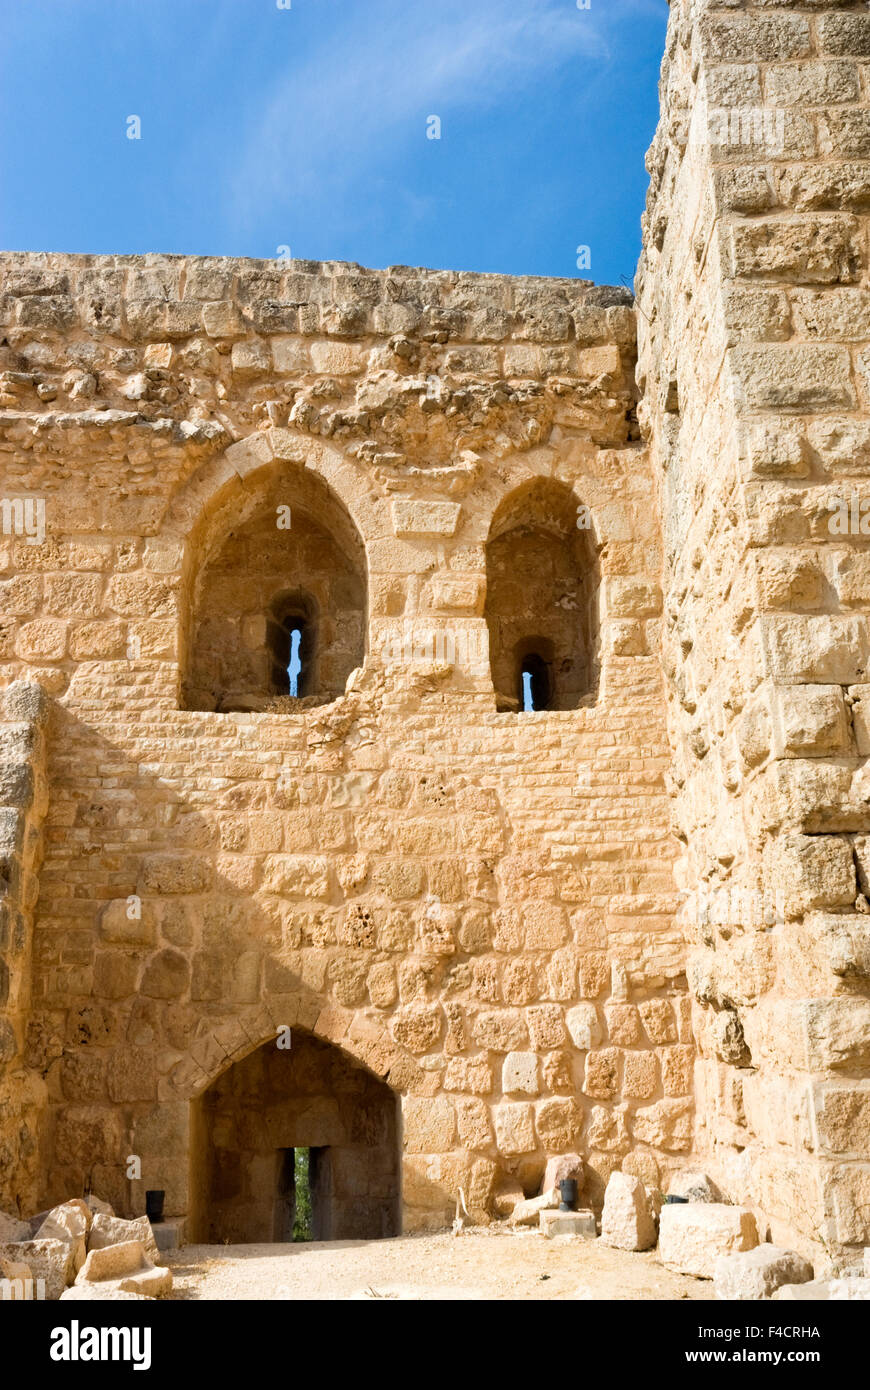 Muslim military fort of Ajloun, Jordan. Stock Photo